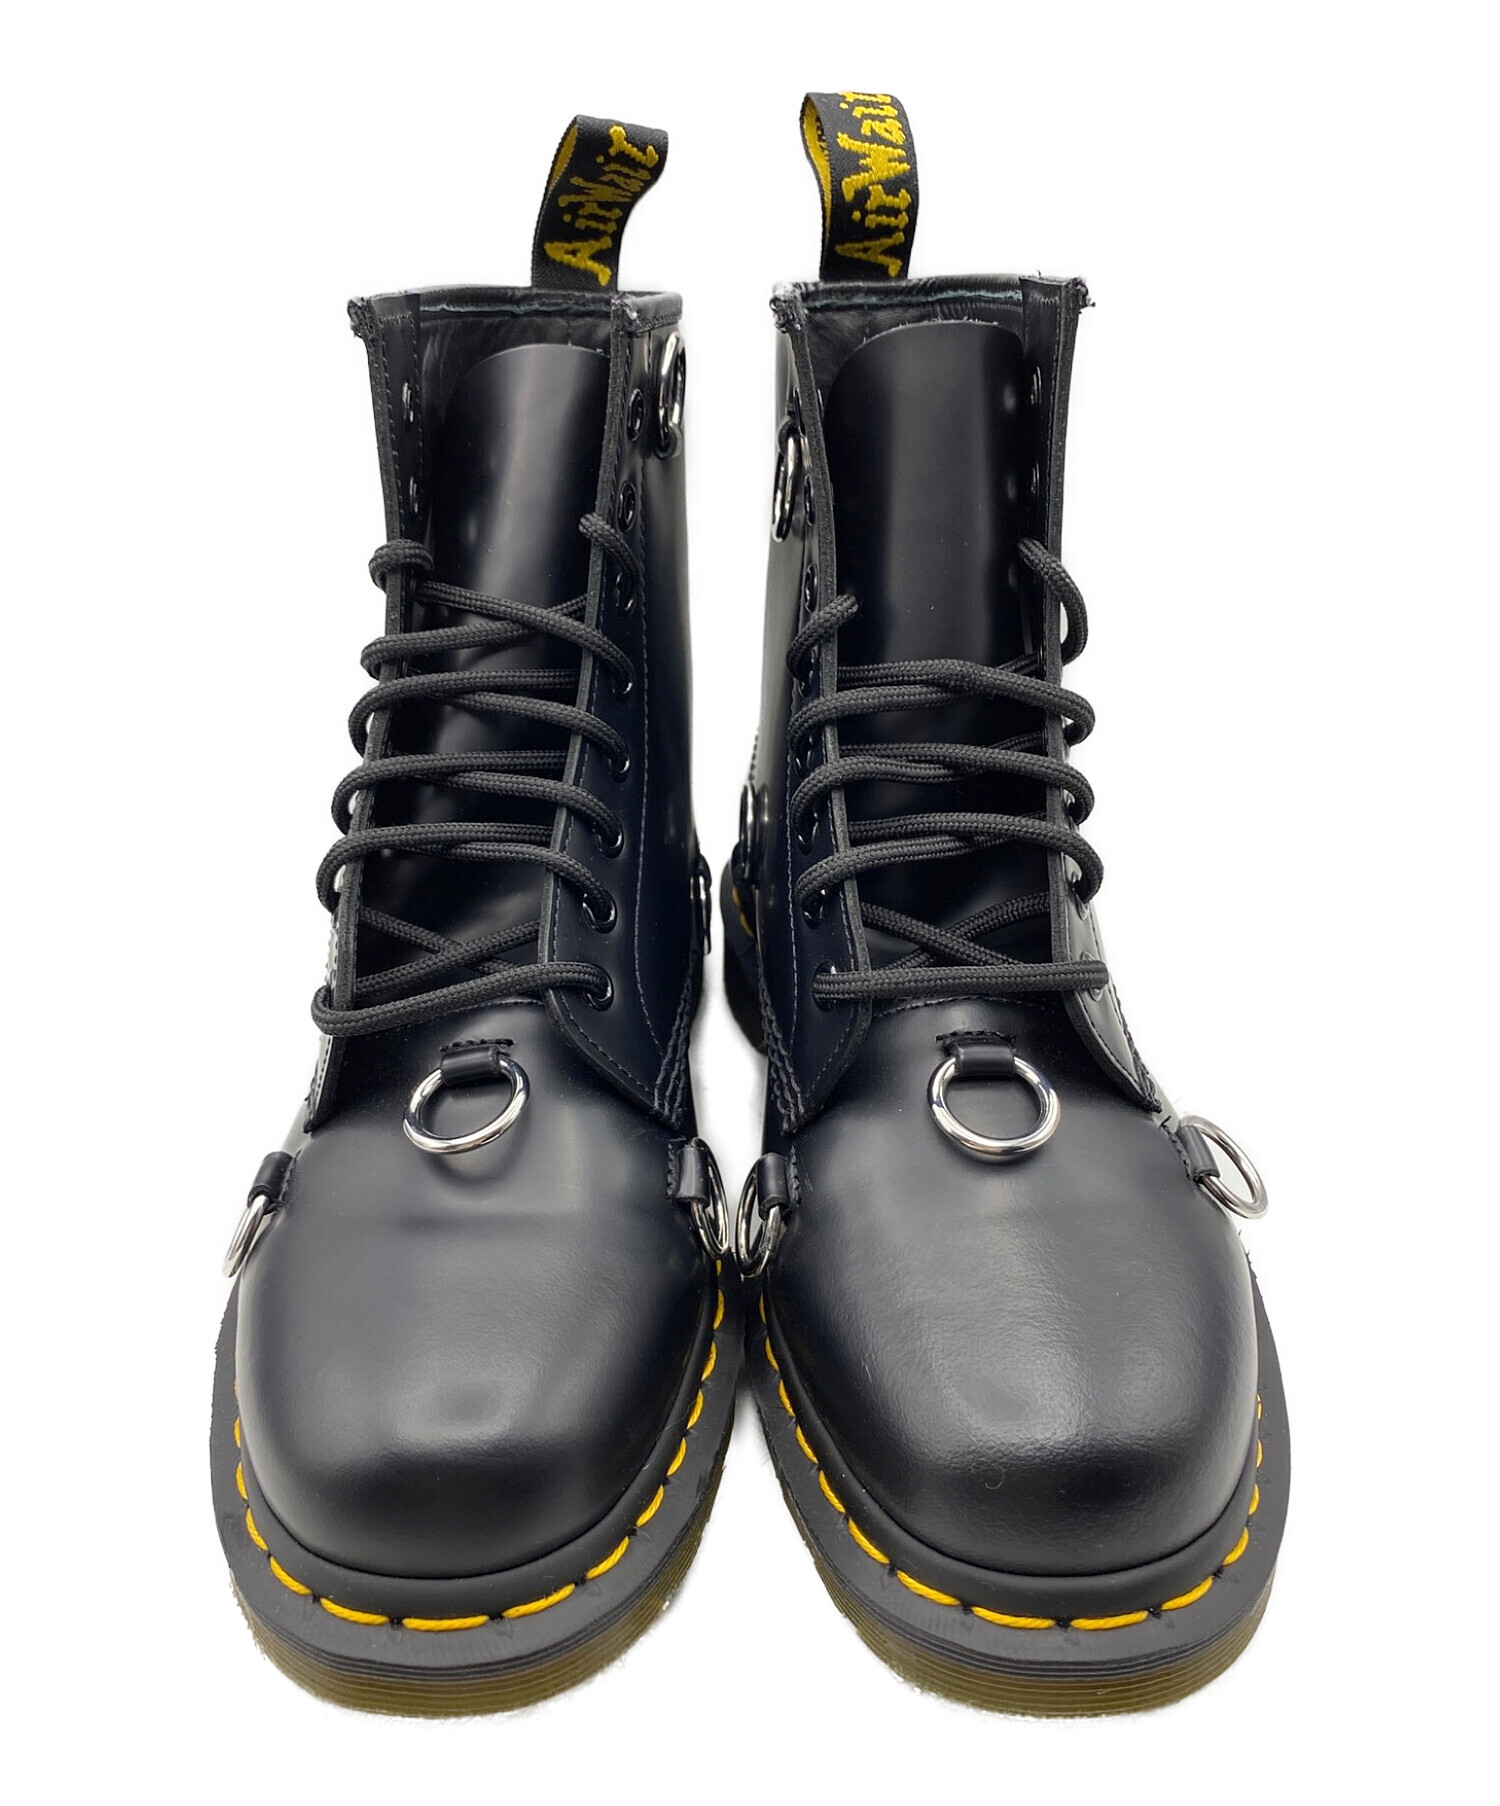 RAF SIMONS (ラフシモンズ) Dr.Martens (ドクターマーチン) 1460 8hole boots ブラック サイズ:41